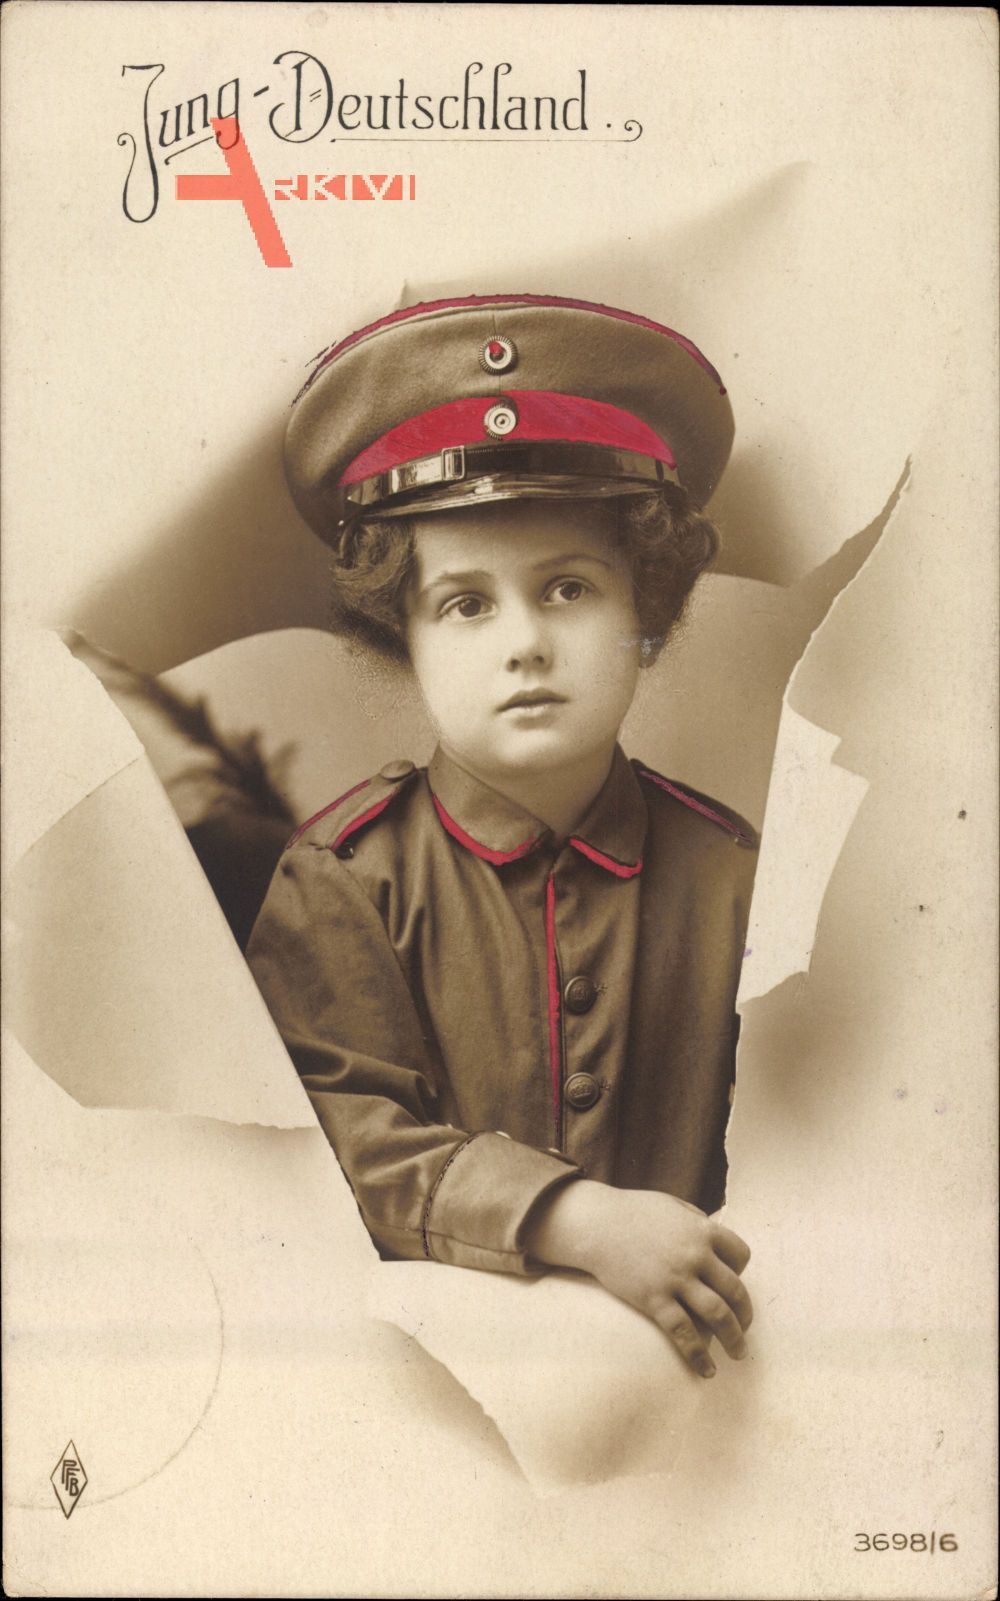 Jung Deutschland, Kind in Uniform, Schirmmütze, PFB 3698 6